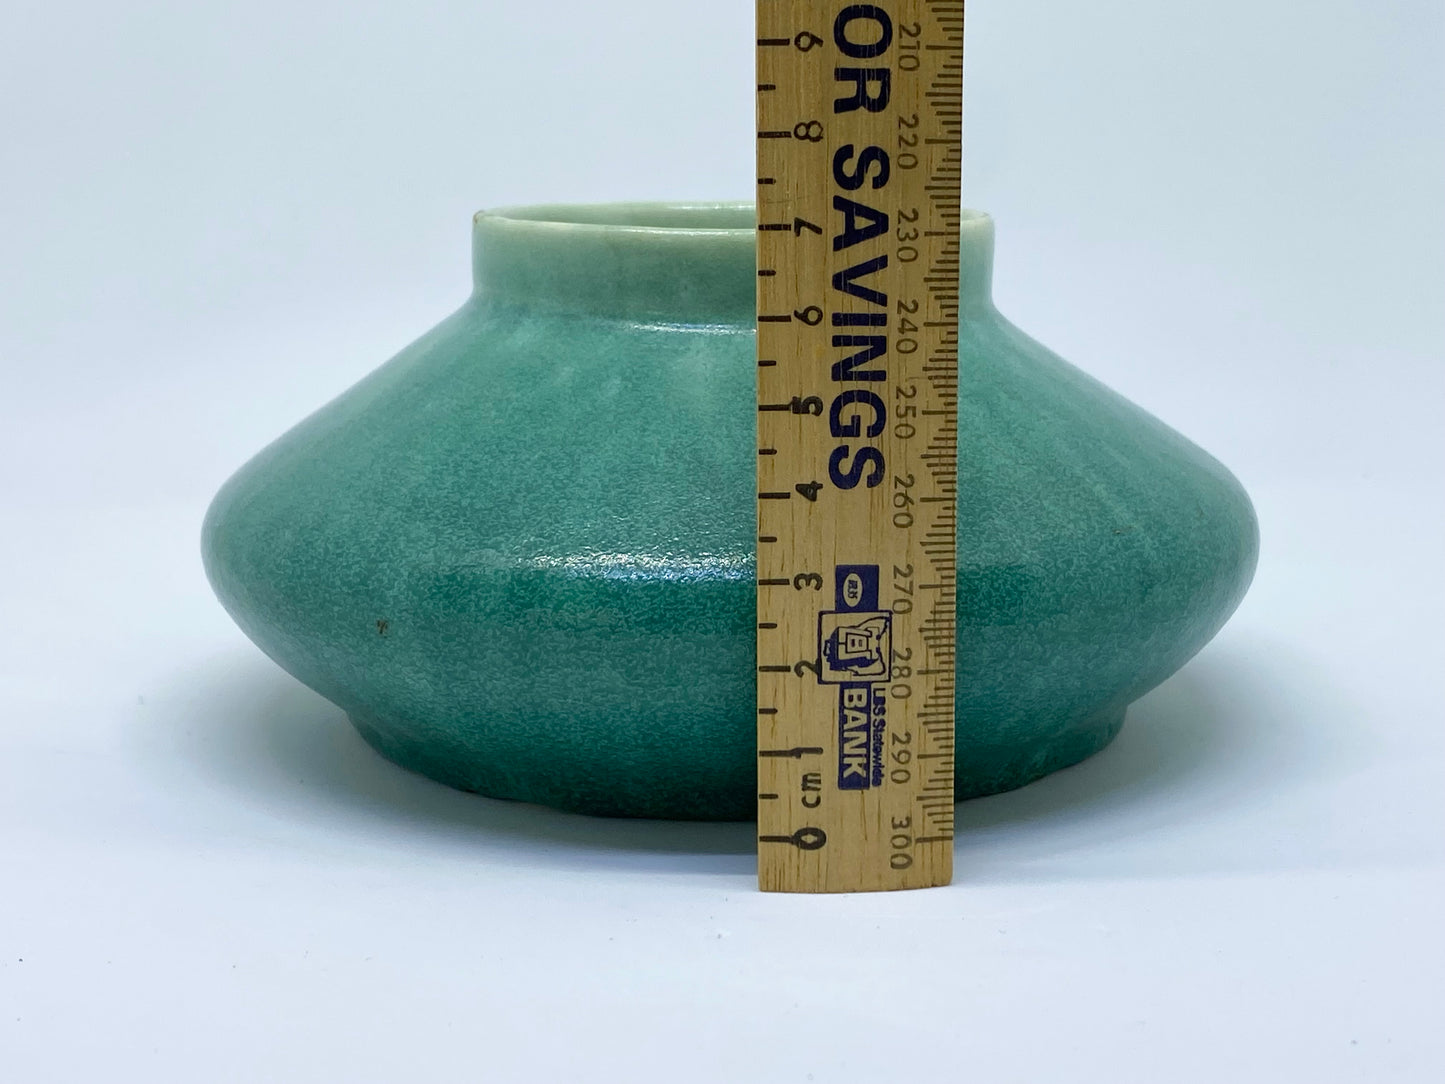 Vintage Melrose Pottery Vase - green